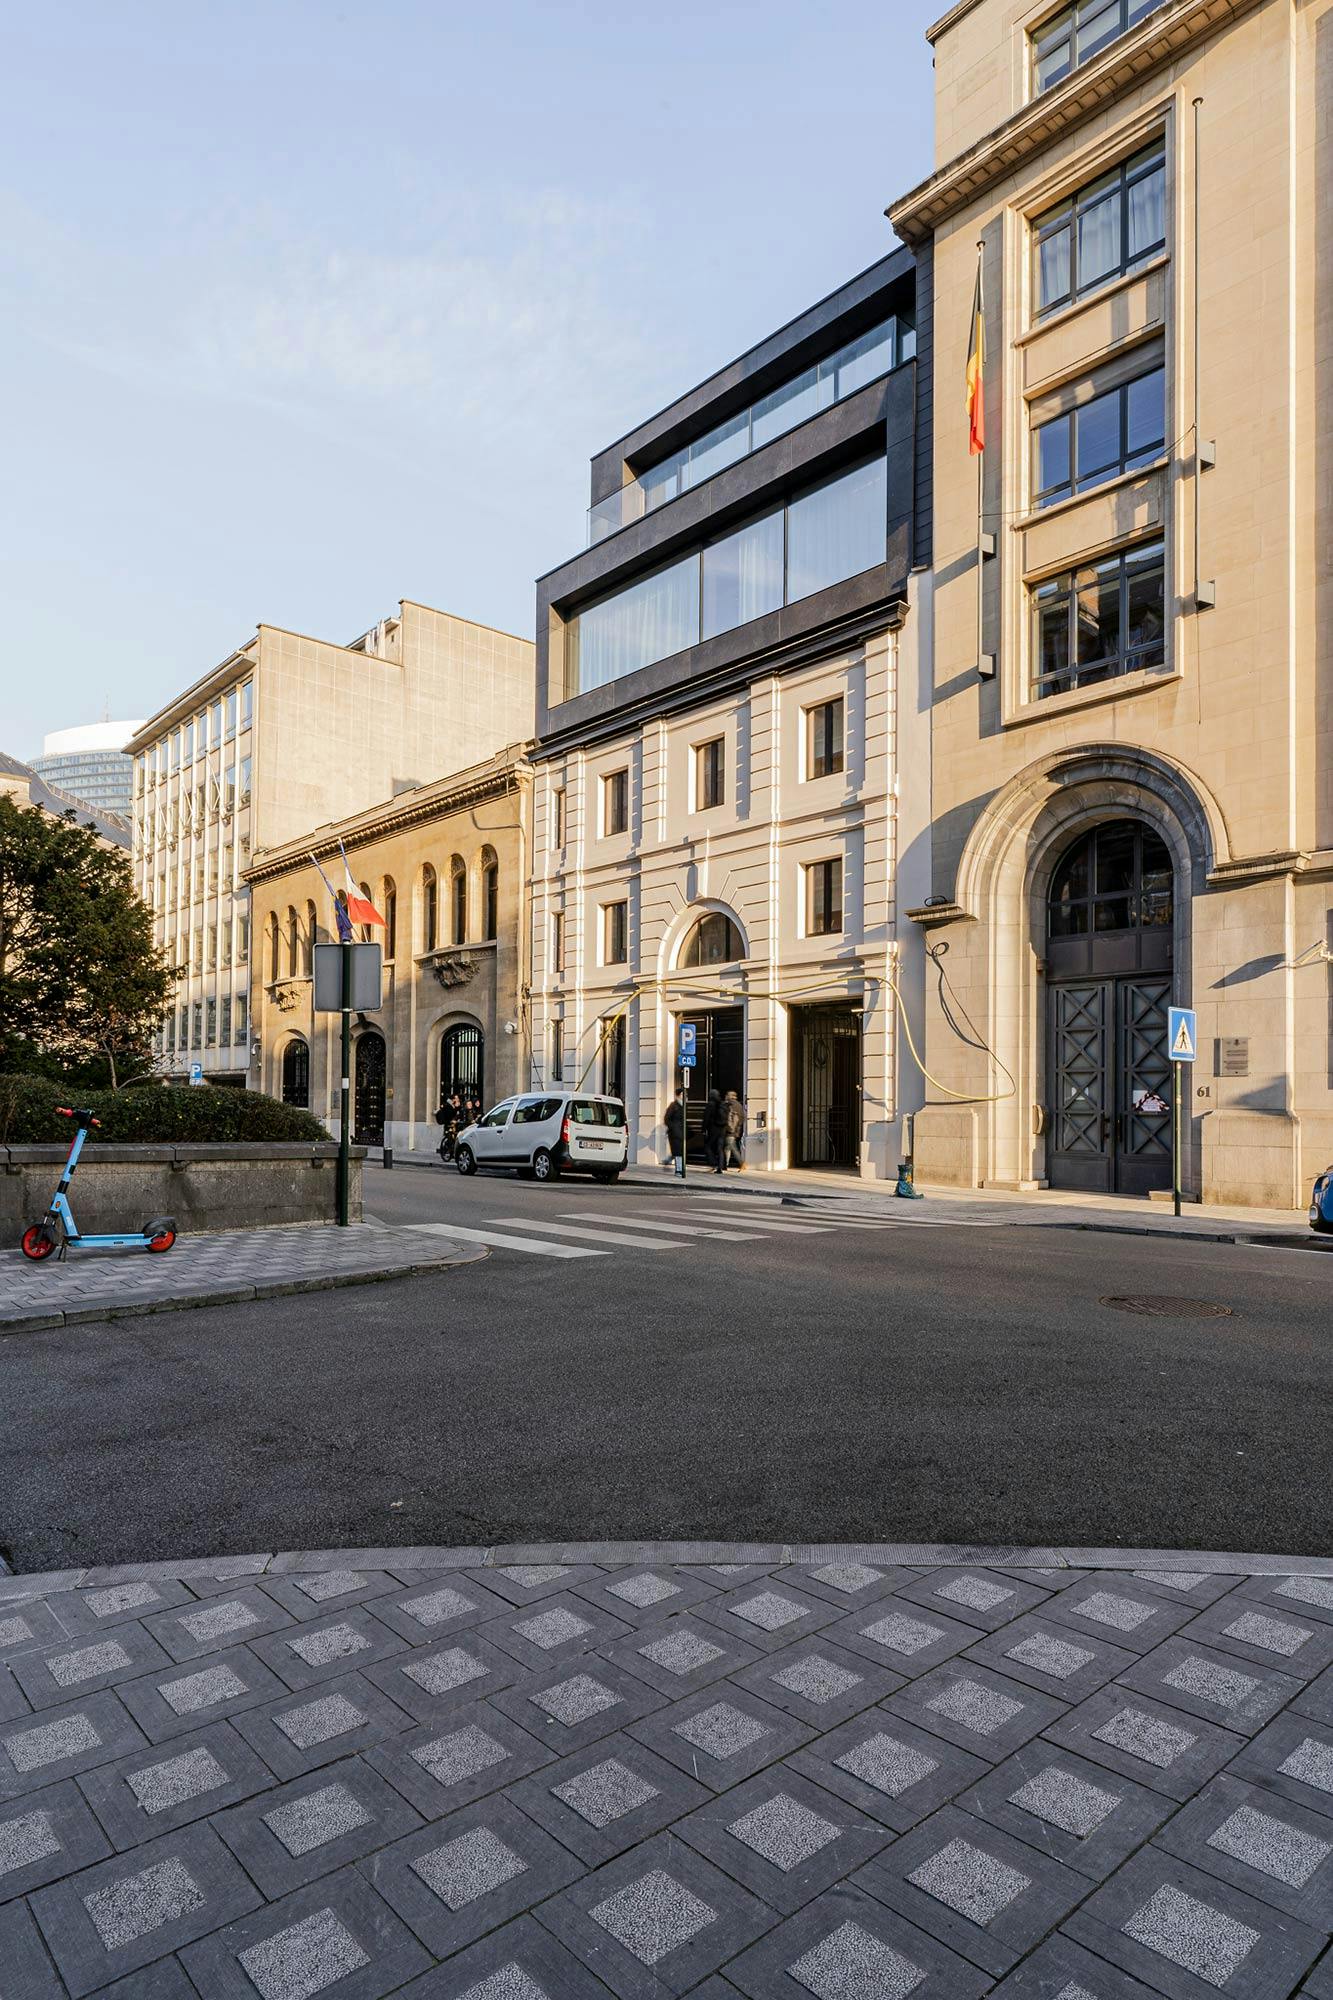 Numéro d'image 47 de la section actuelle de Réflexions en DKTN: la rénovation du bâtiment classique « The Duke » de Bruxelles de Cosentino France